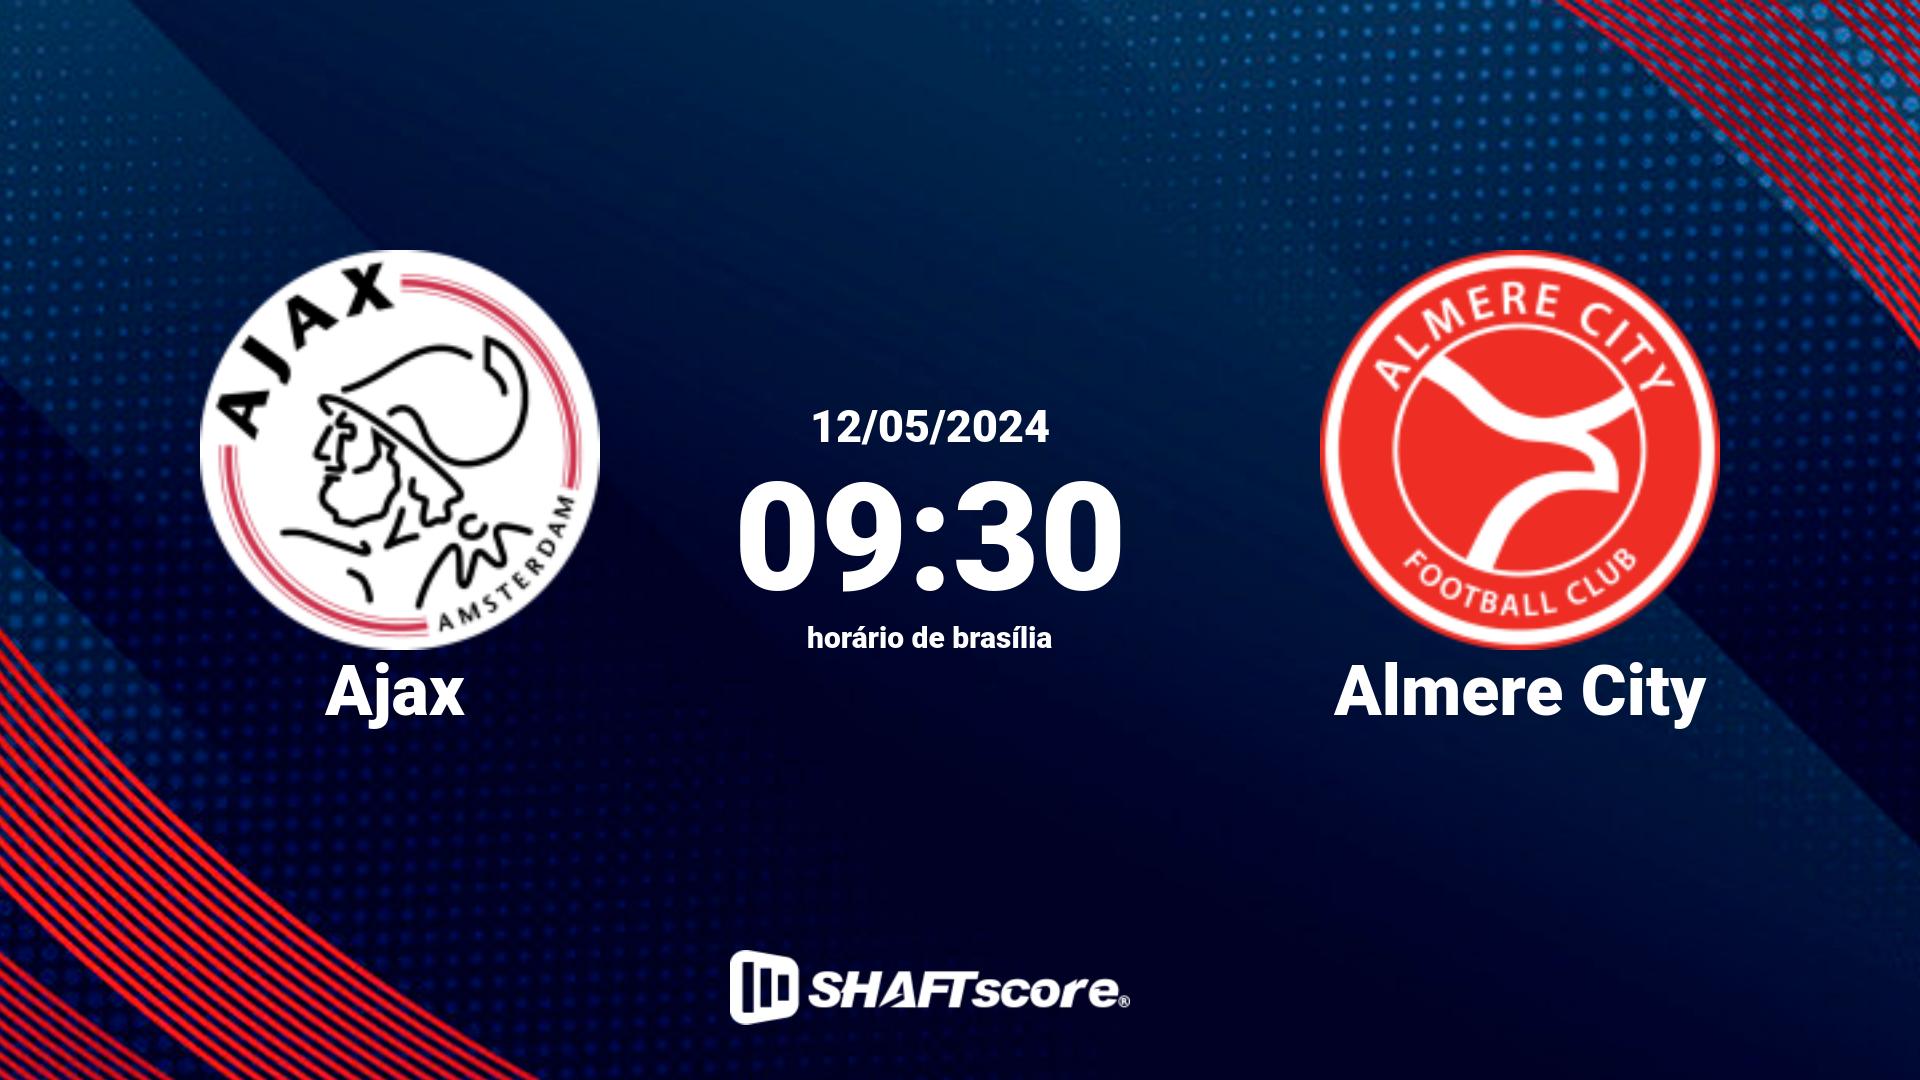 Estatísticas do jogo Ajax vs Almere City 12.05 09:30